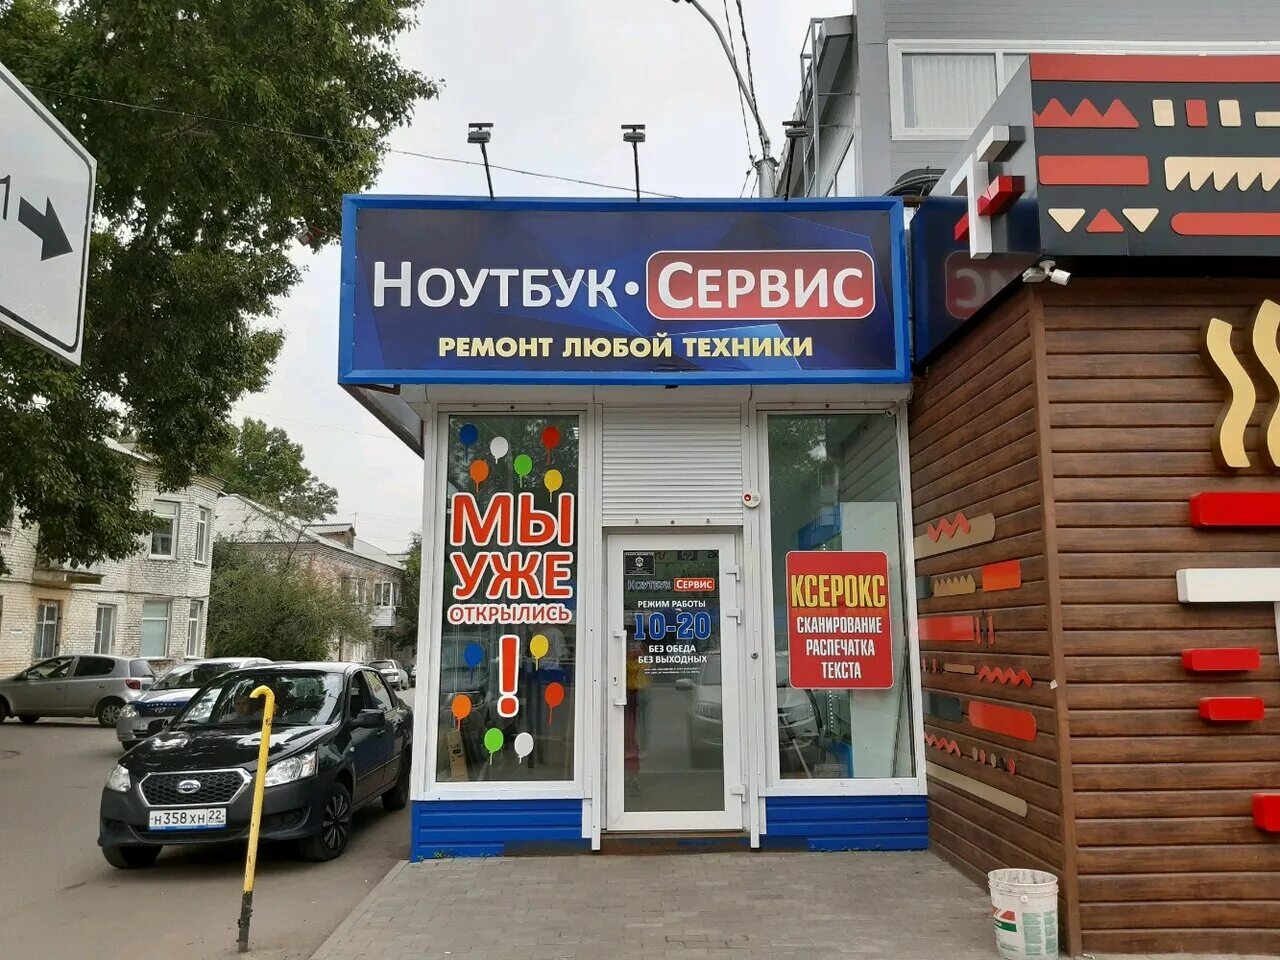 Сервис ноутбуков. Ноутбук сервис. Ноутбук сервис Барнаул. Новосибирская 11 б Барнаул ноутбук сервис.